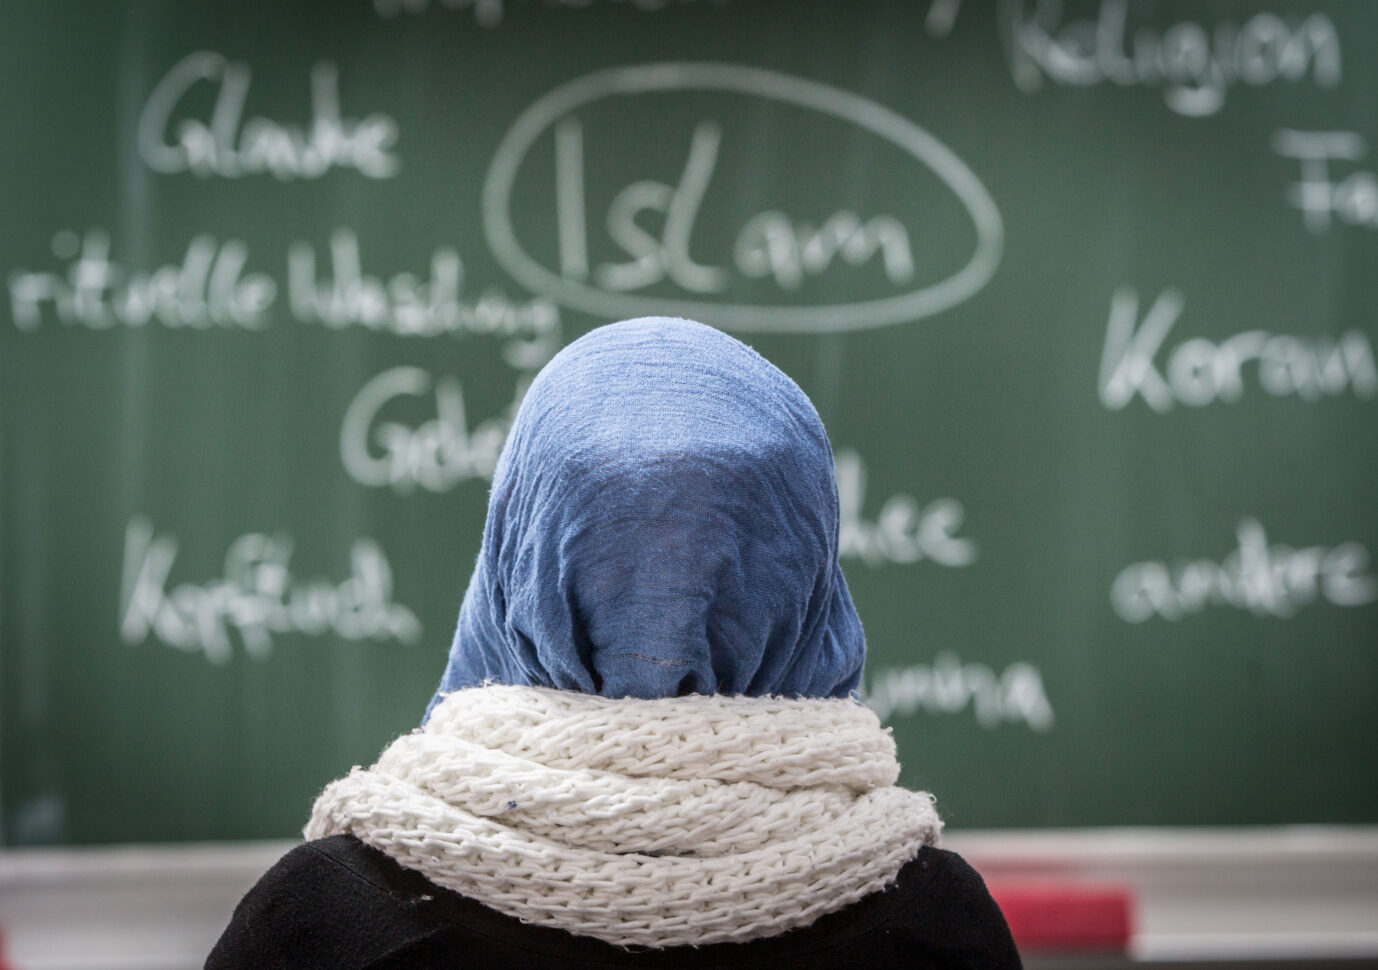 Die Frauenrechtsorganisation Terre des Femmes will das Kopftuch in Schulen für Kinder unter 14 Jahren verbieten. Zuvor hatte die Organisation eine Umfrage unter Lehrern durchgeführt.